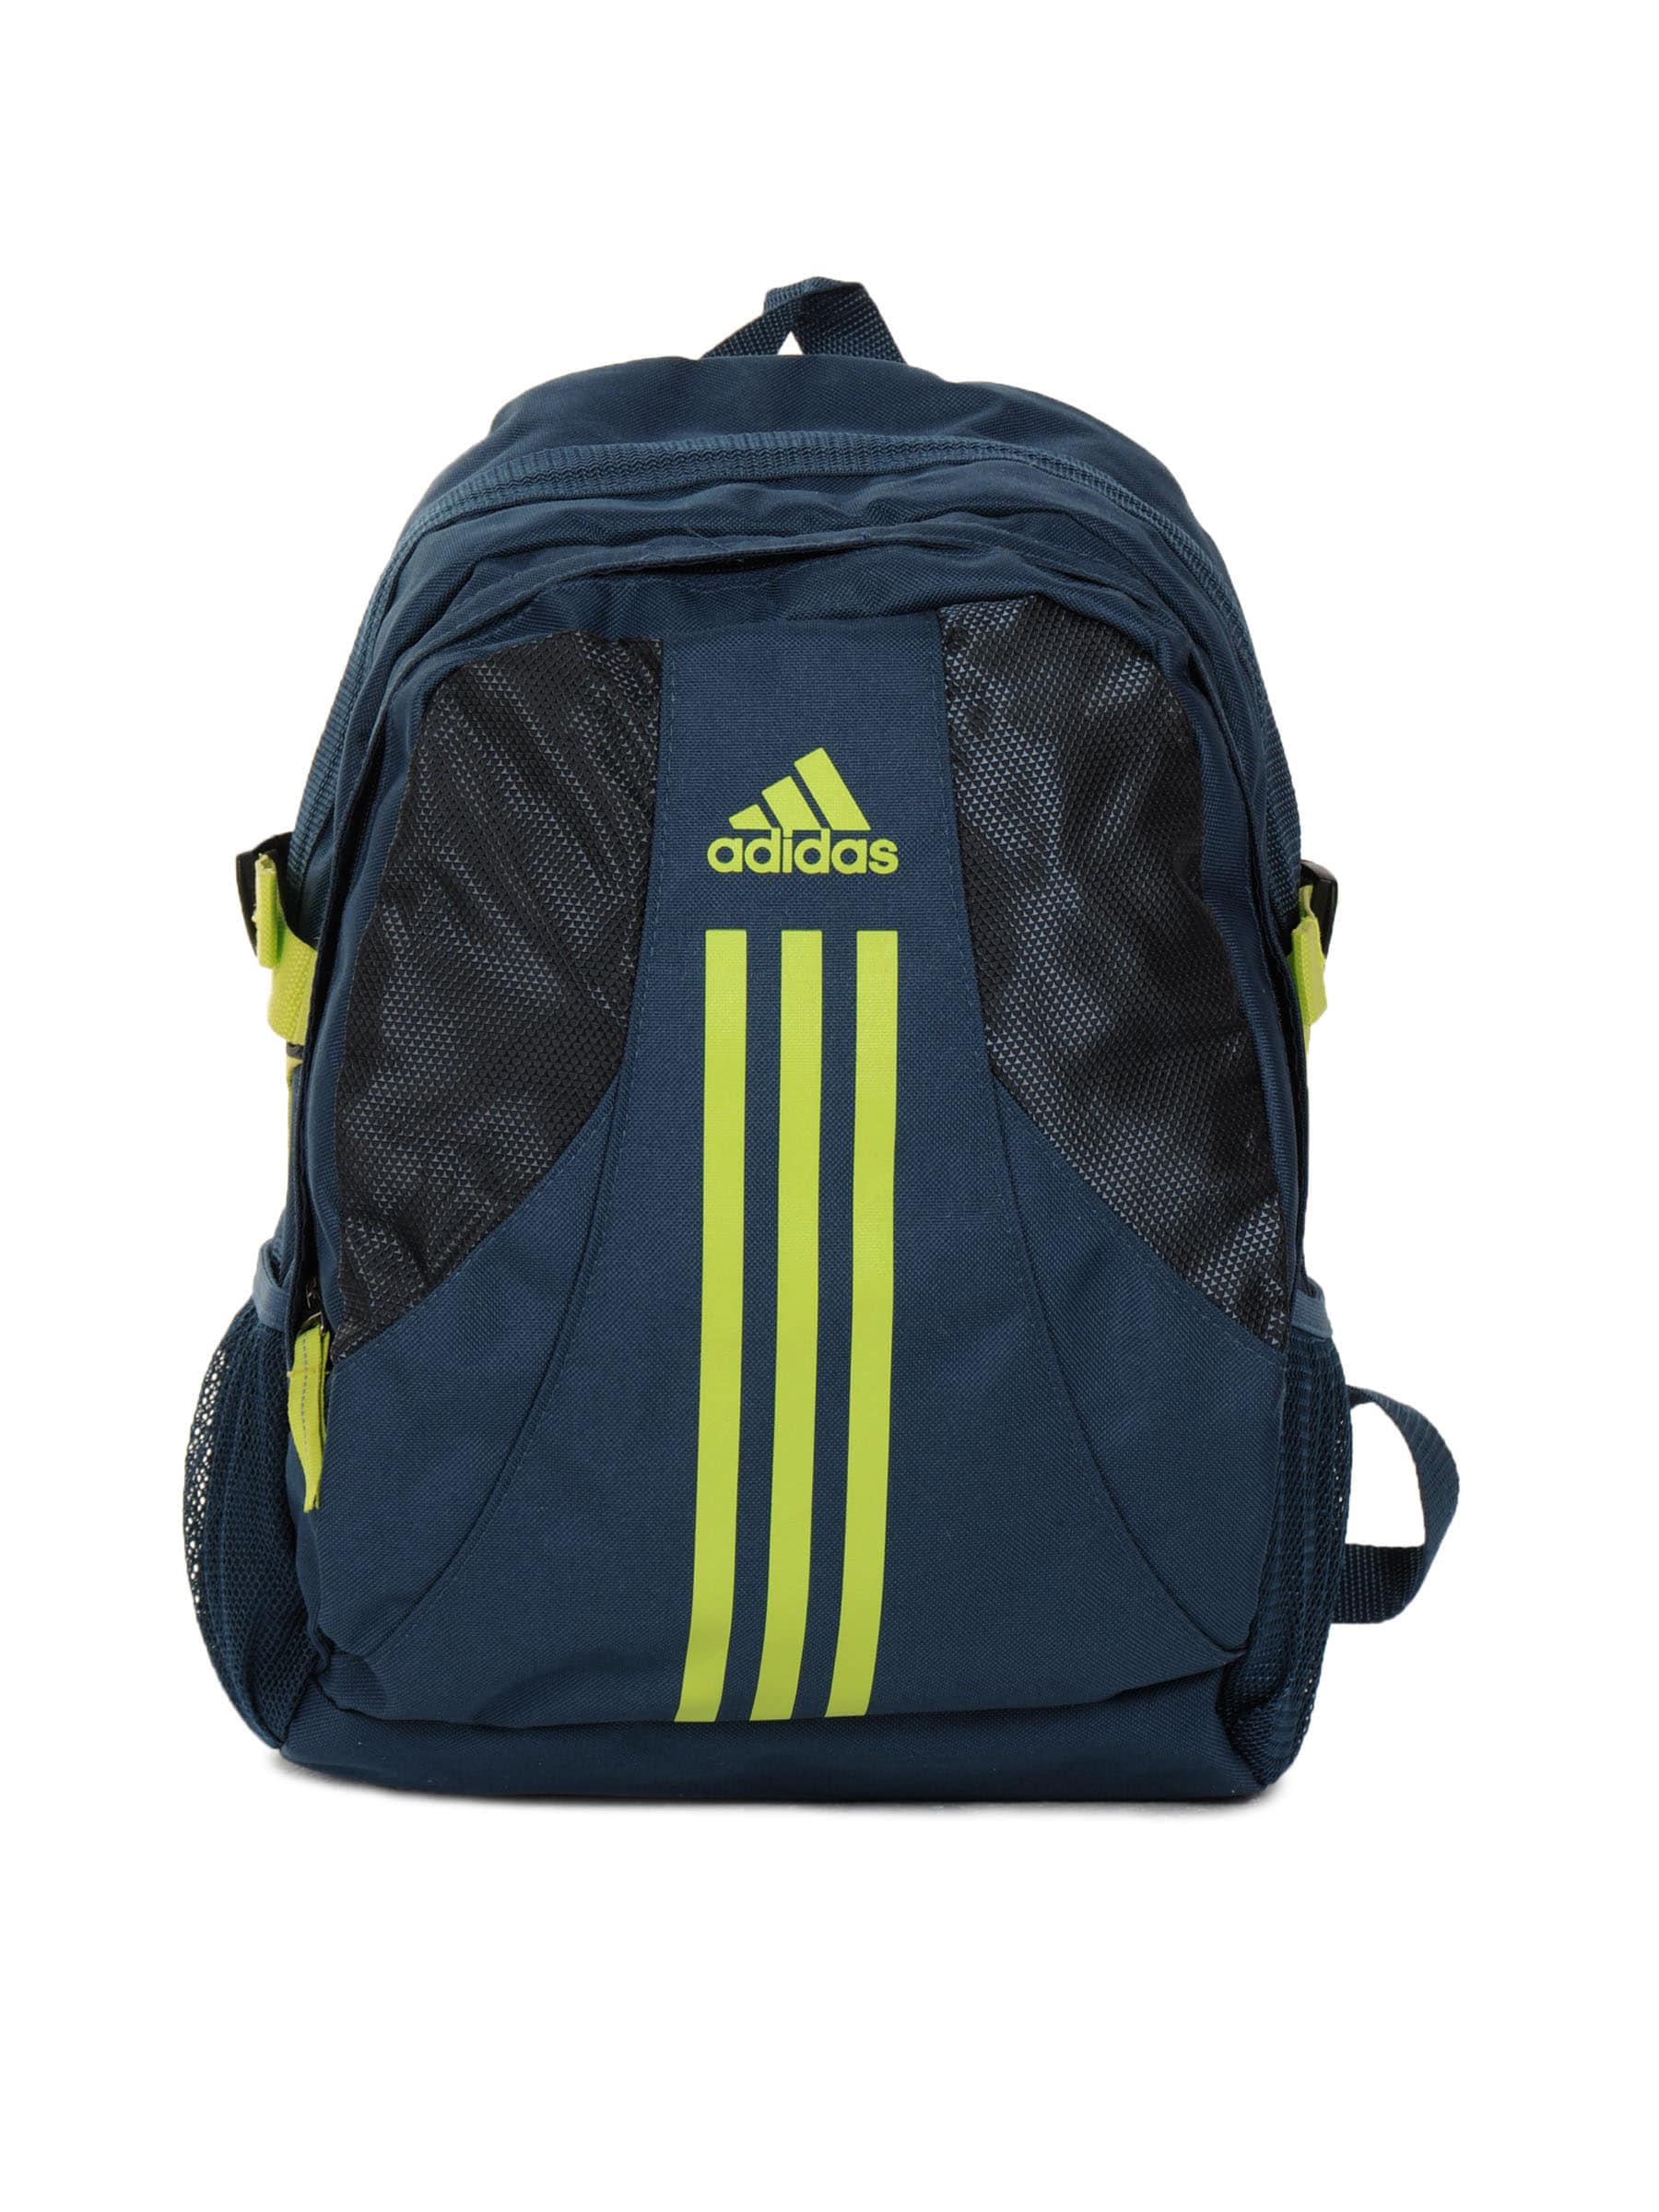 ADIDAS Unisex Power Blue Backpack